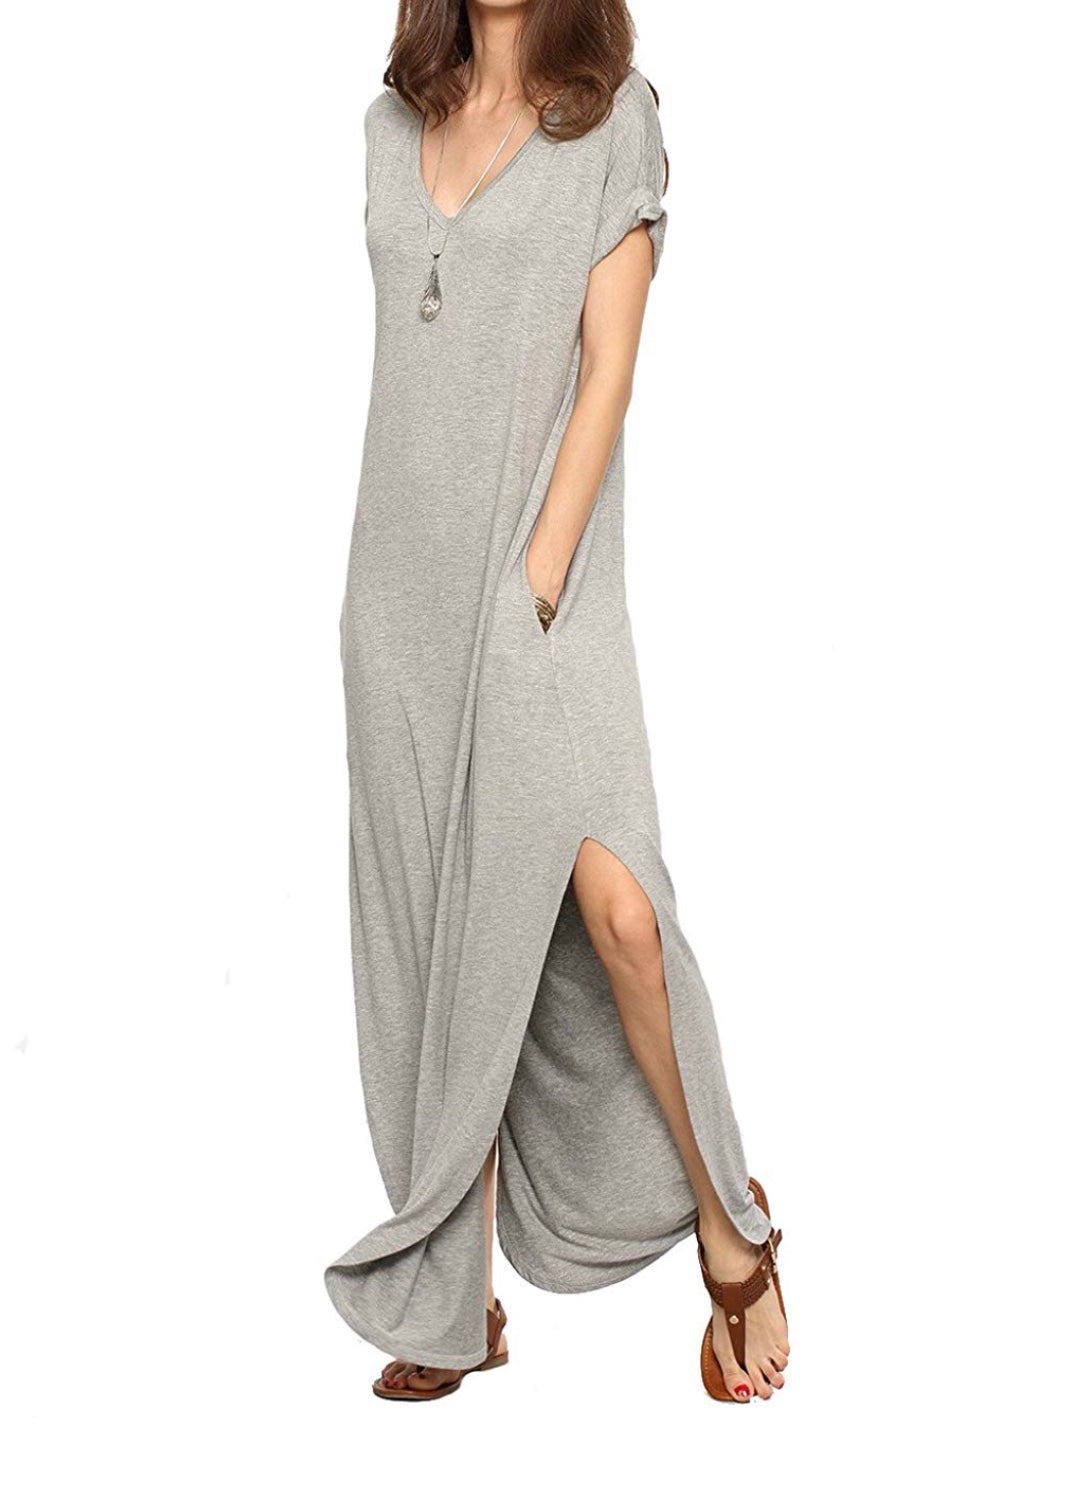 Summer Jersey Dress - Light Grey